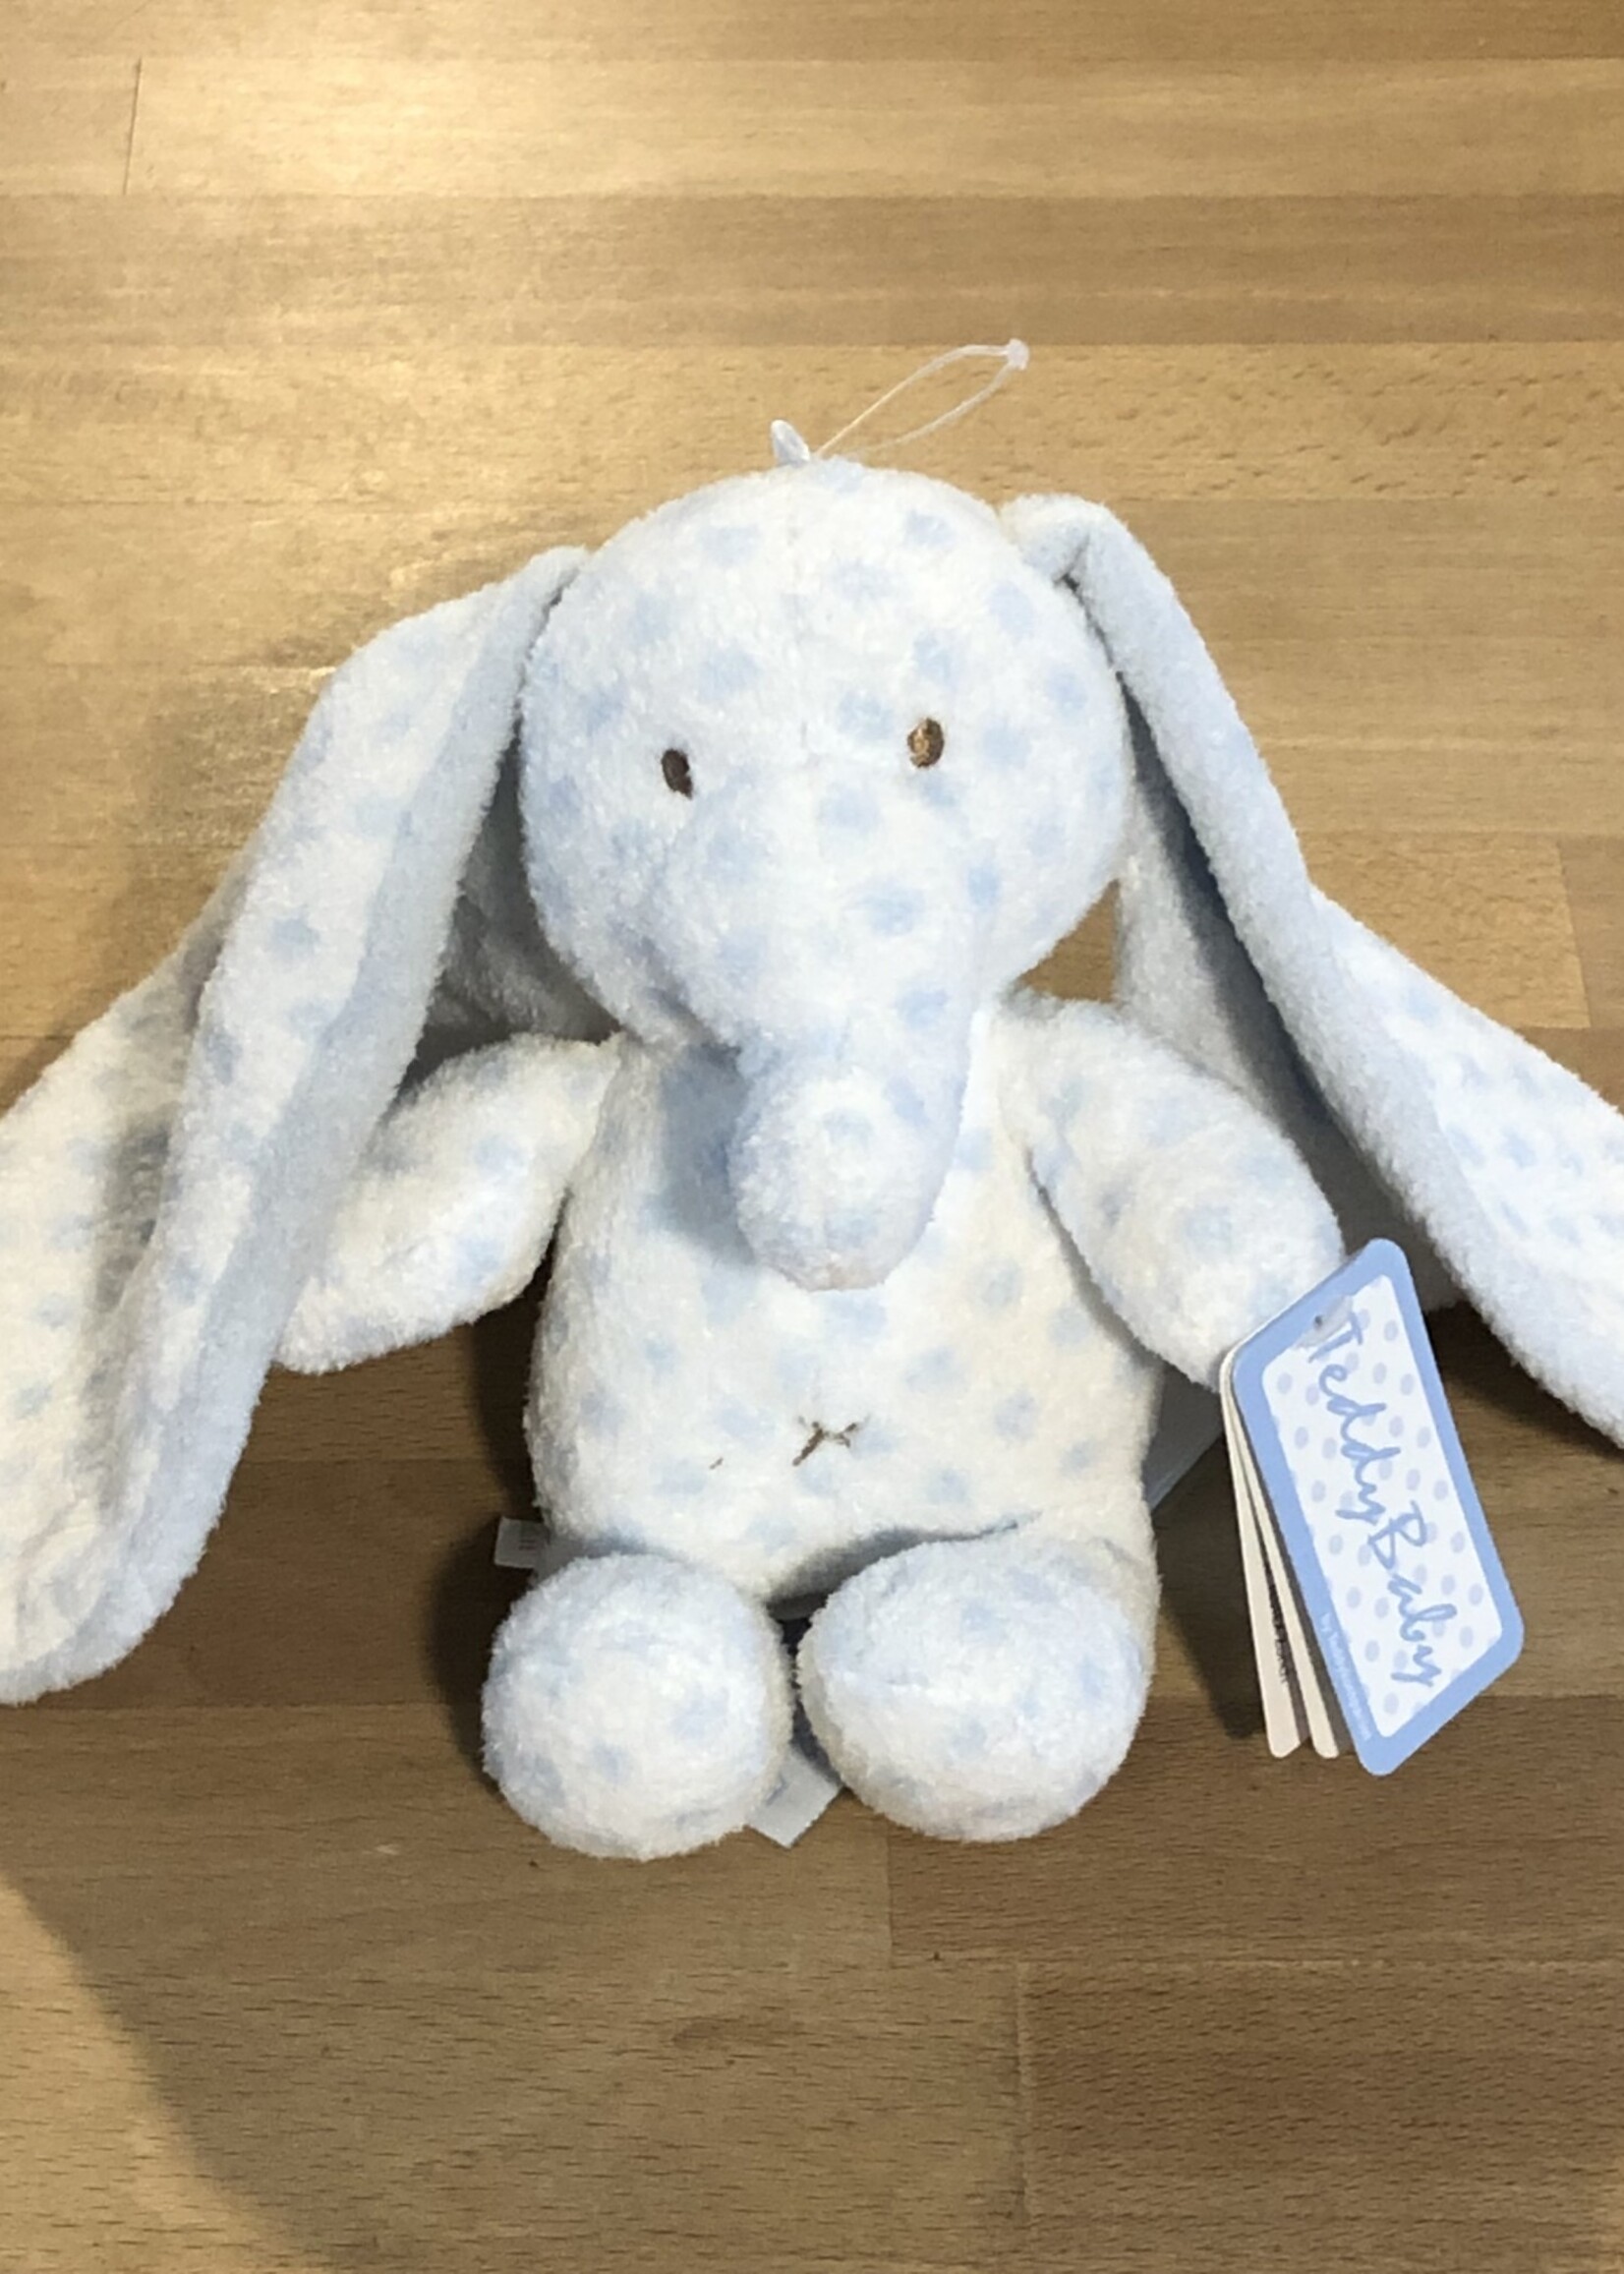 Stuffy - Big Ears Blue Elephant